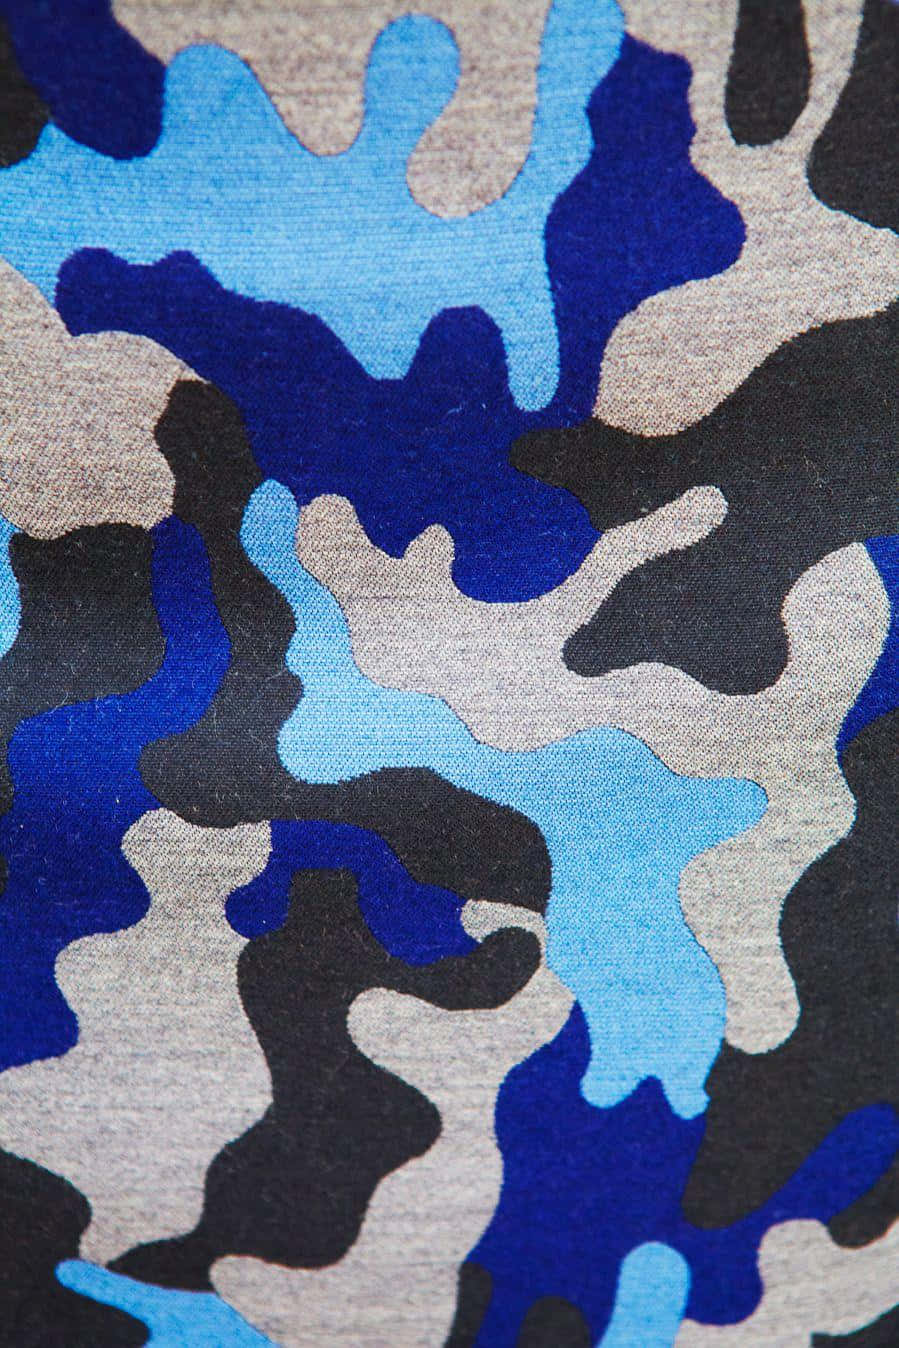 Dieauffällige Blau-tarnung Vereint Klassischen Stil Und Moderne Trends Für Einen Aufregenden Neuen Look. Wallpaper